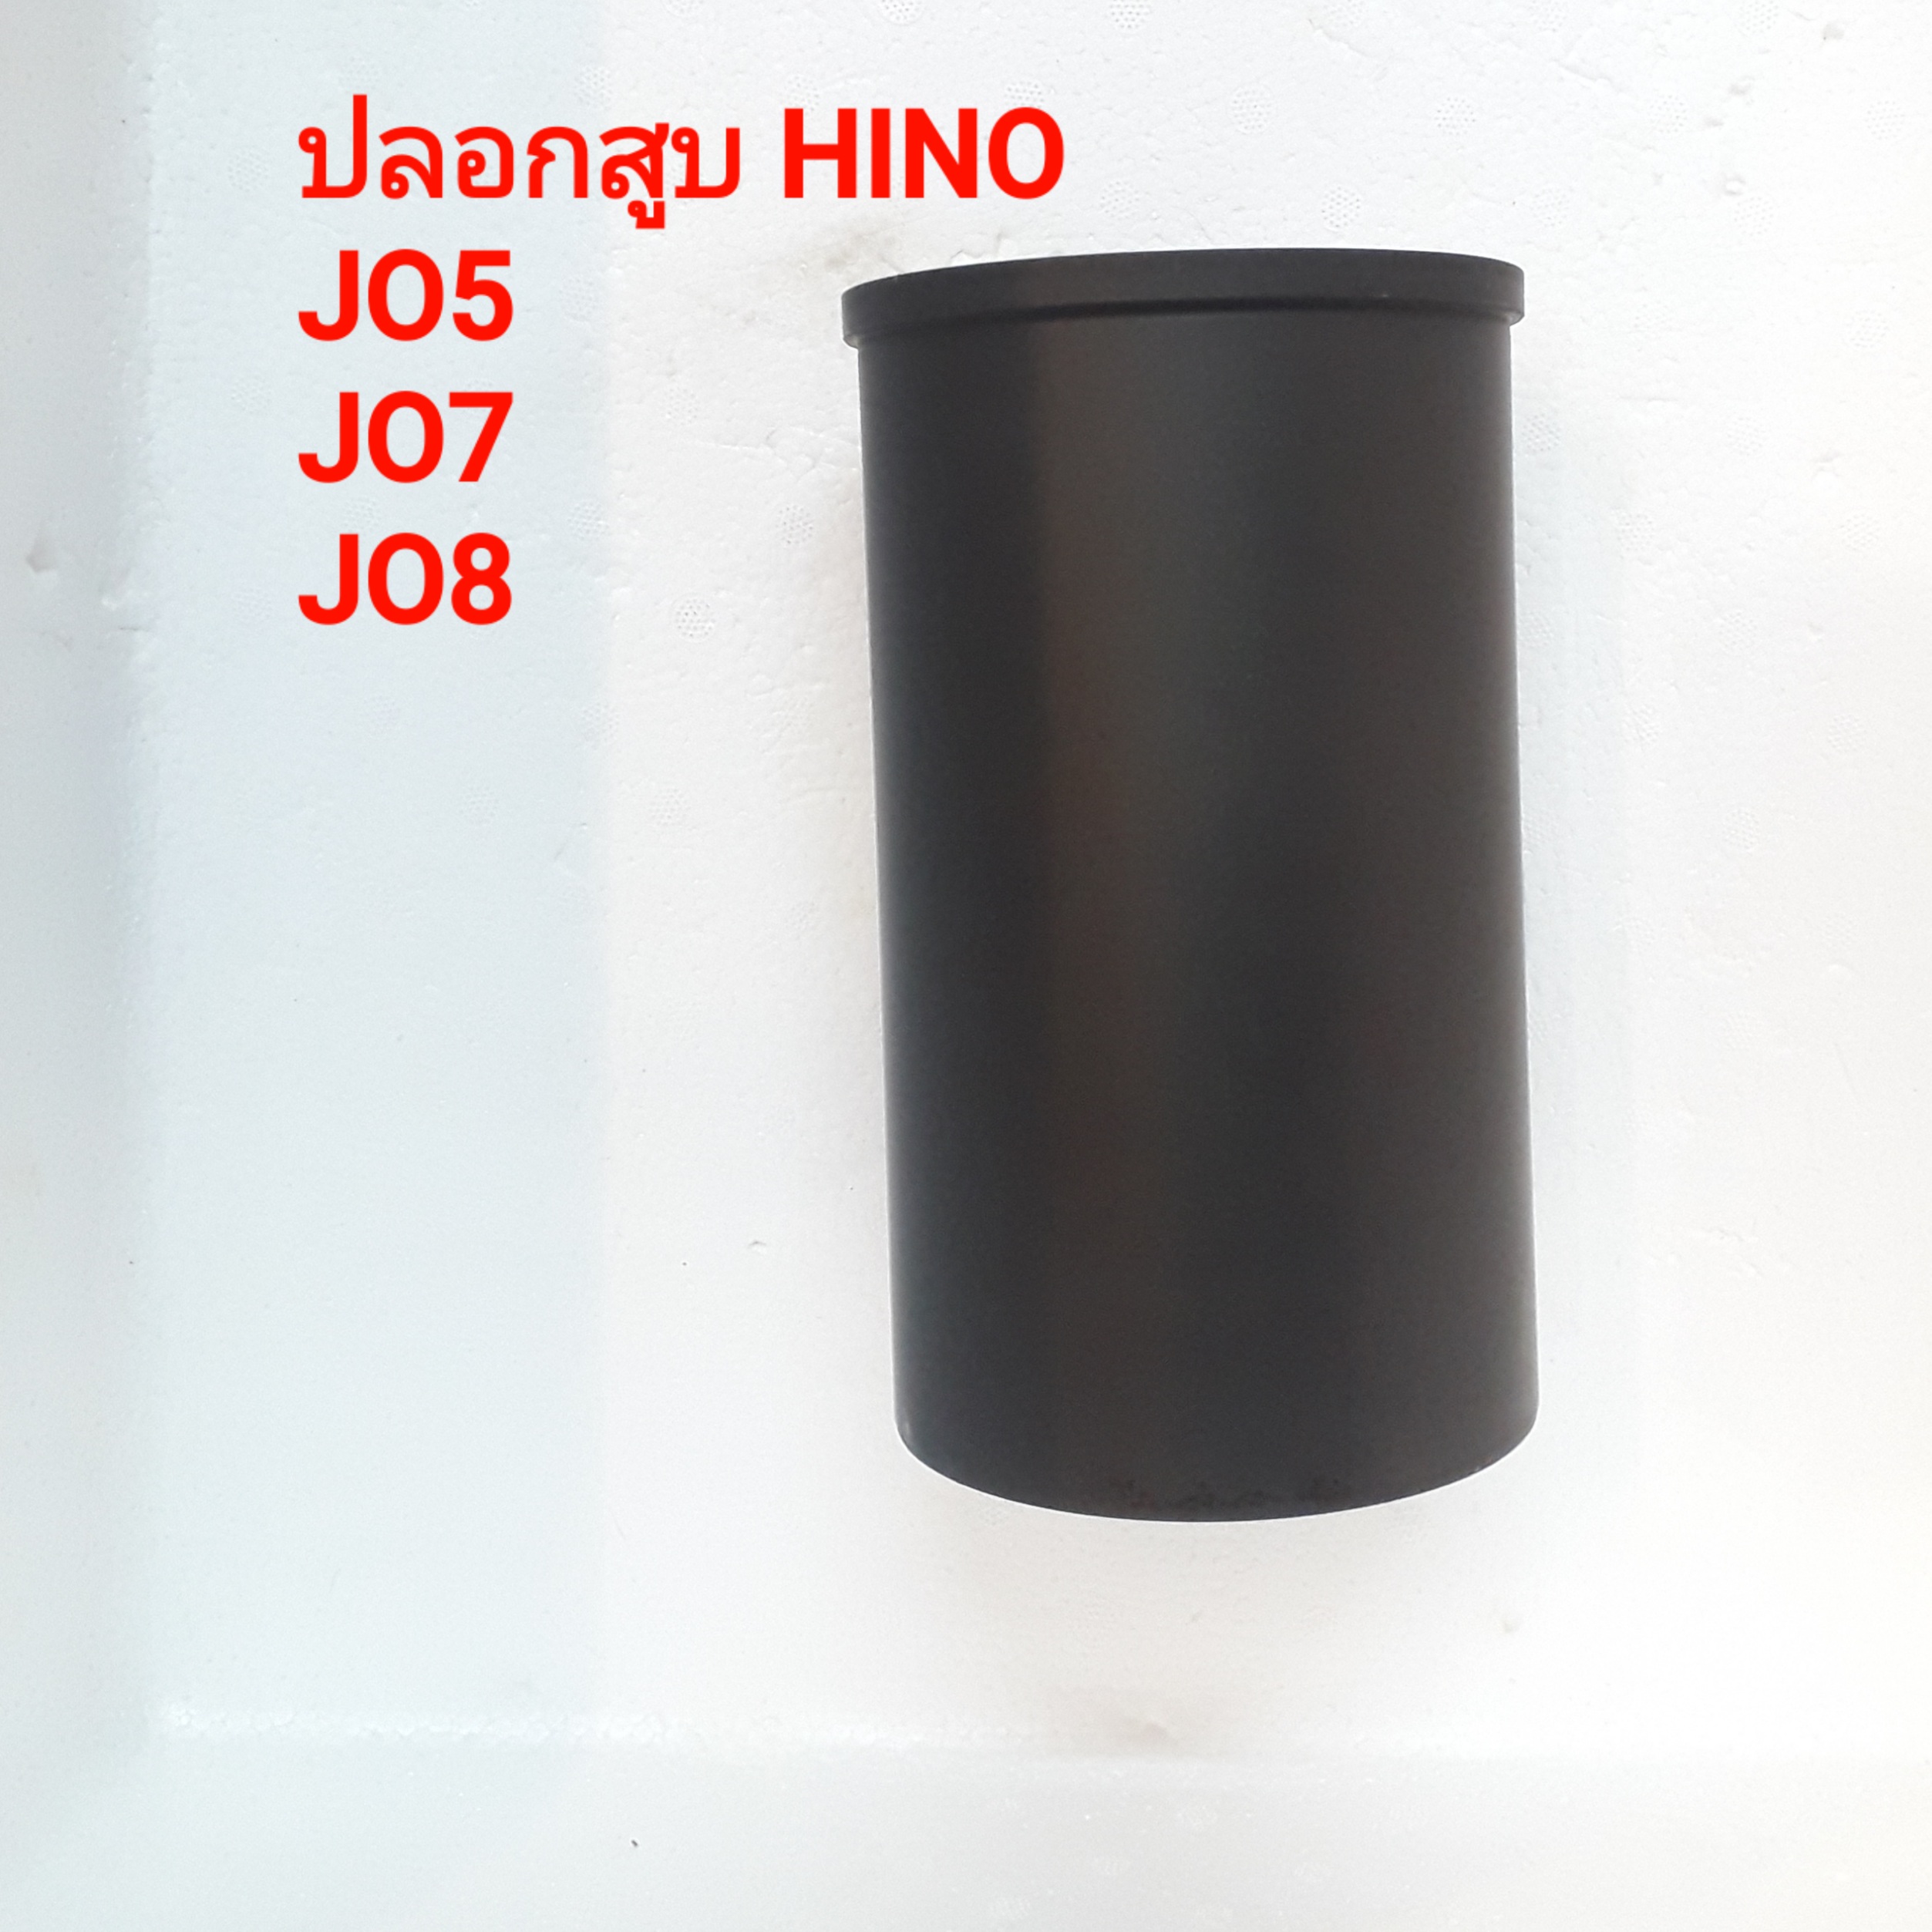 ปลอกสูบ รถบรรทุก HINO JO5 JO7 JO8 จำนวน 1 ปลอก